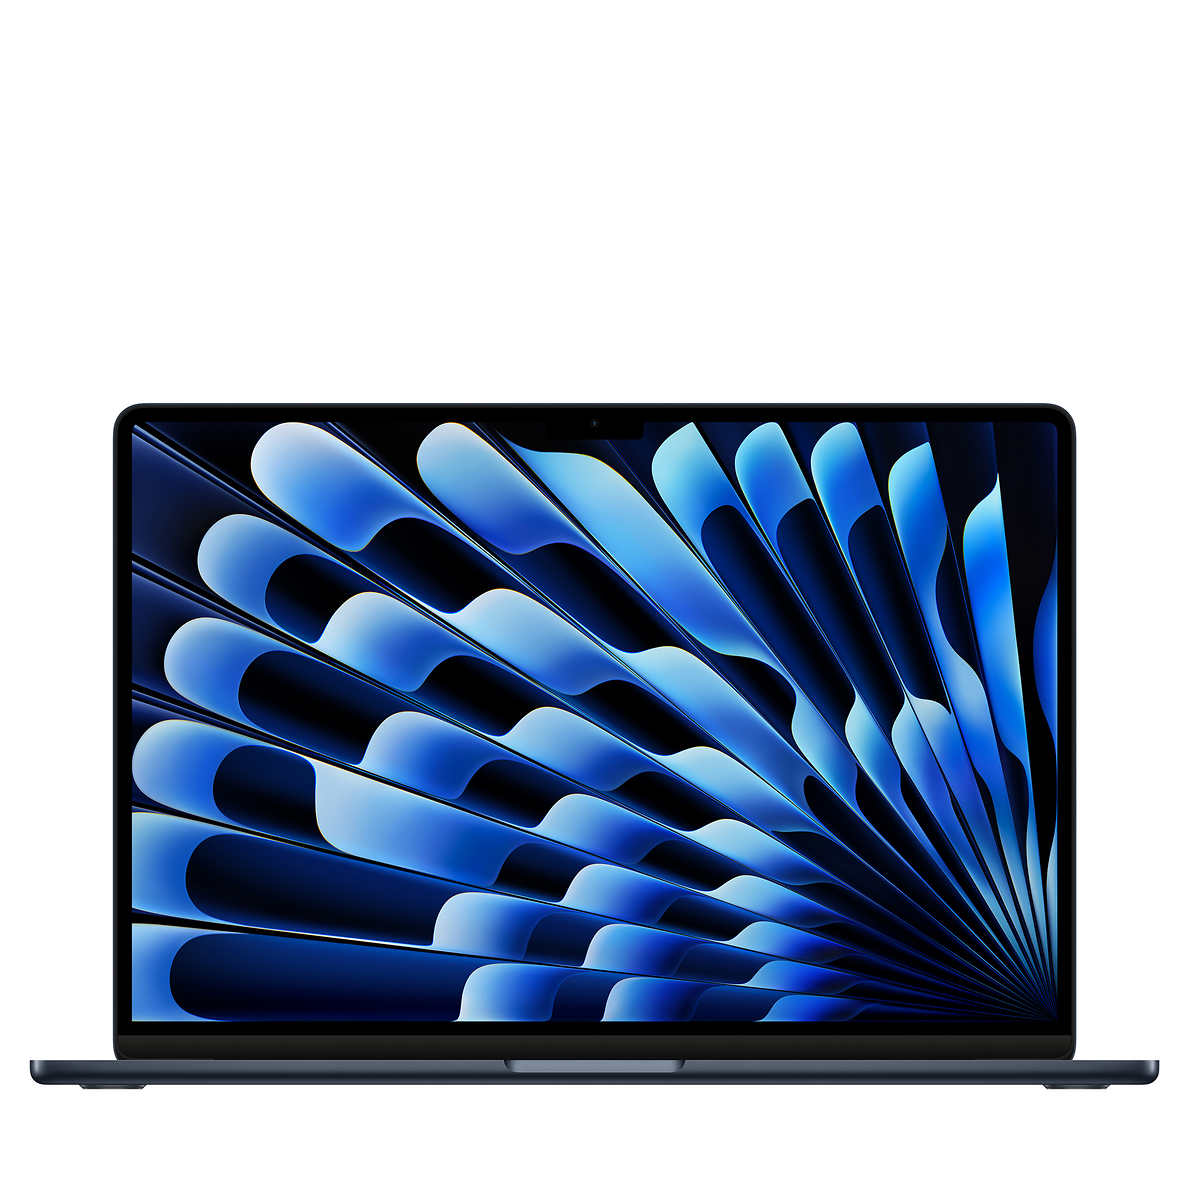 MacBook Air laptop (15-inch) - Apple M3 chip, 8-core CPU, 10-core GPU, 8GB memory, 512GB SSD storage